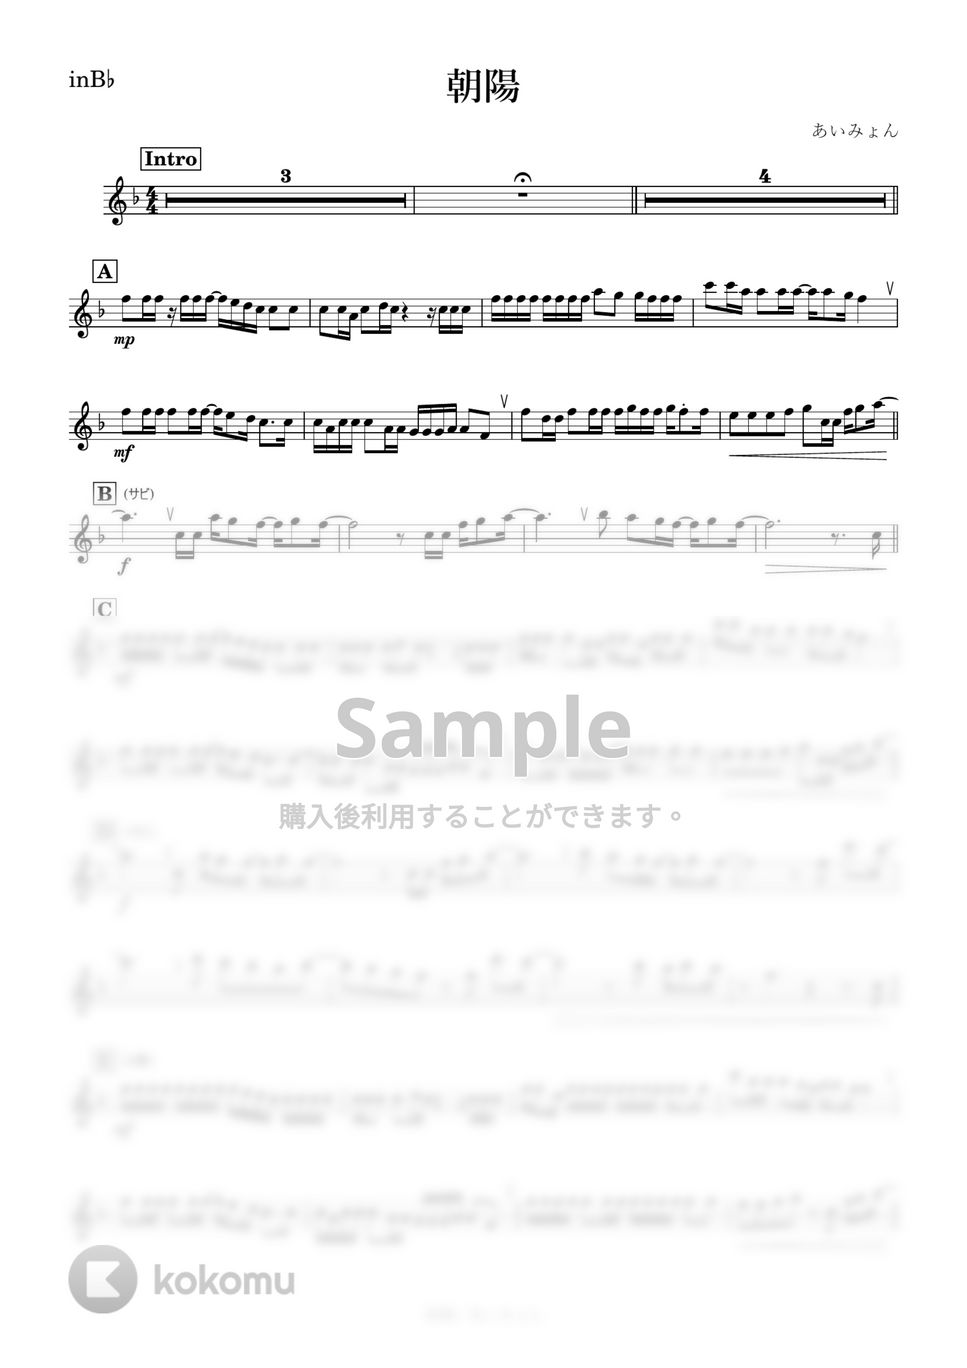 あいみょん - 朝陽 (B♭) by kanamusic